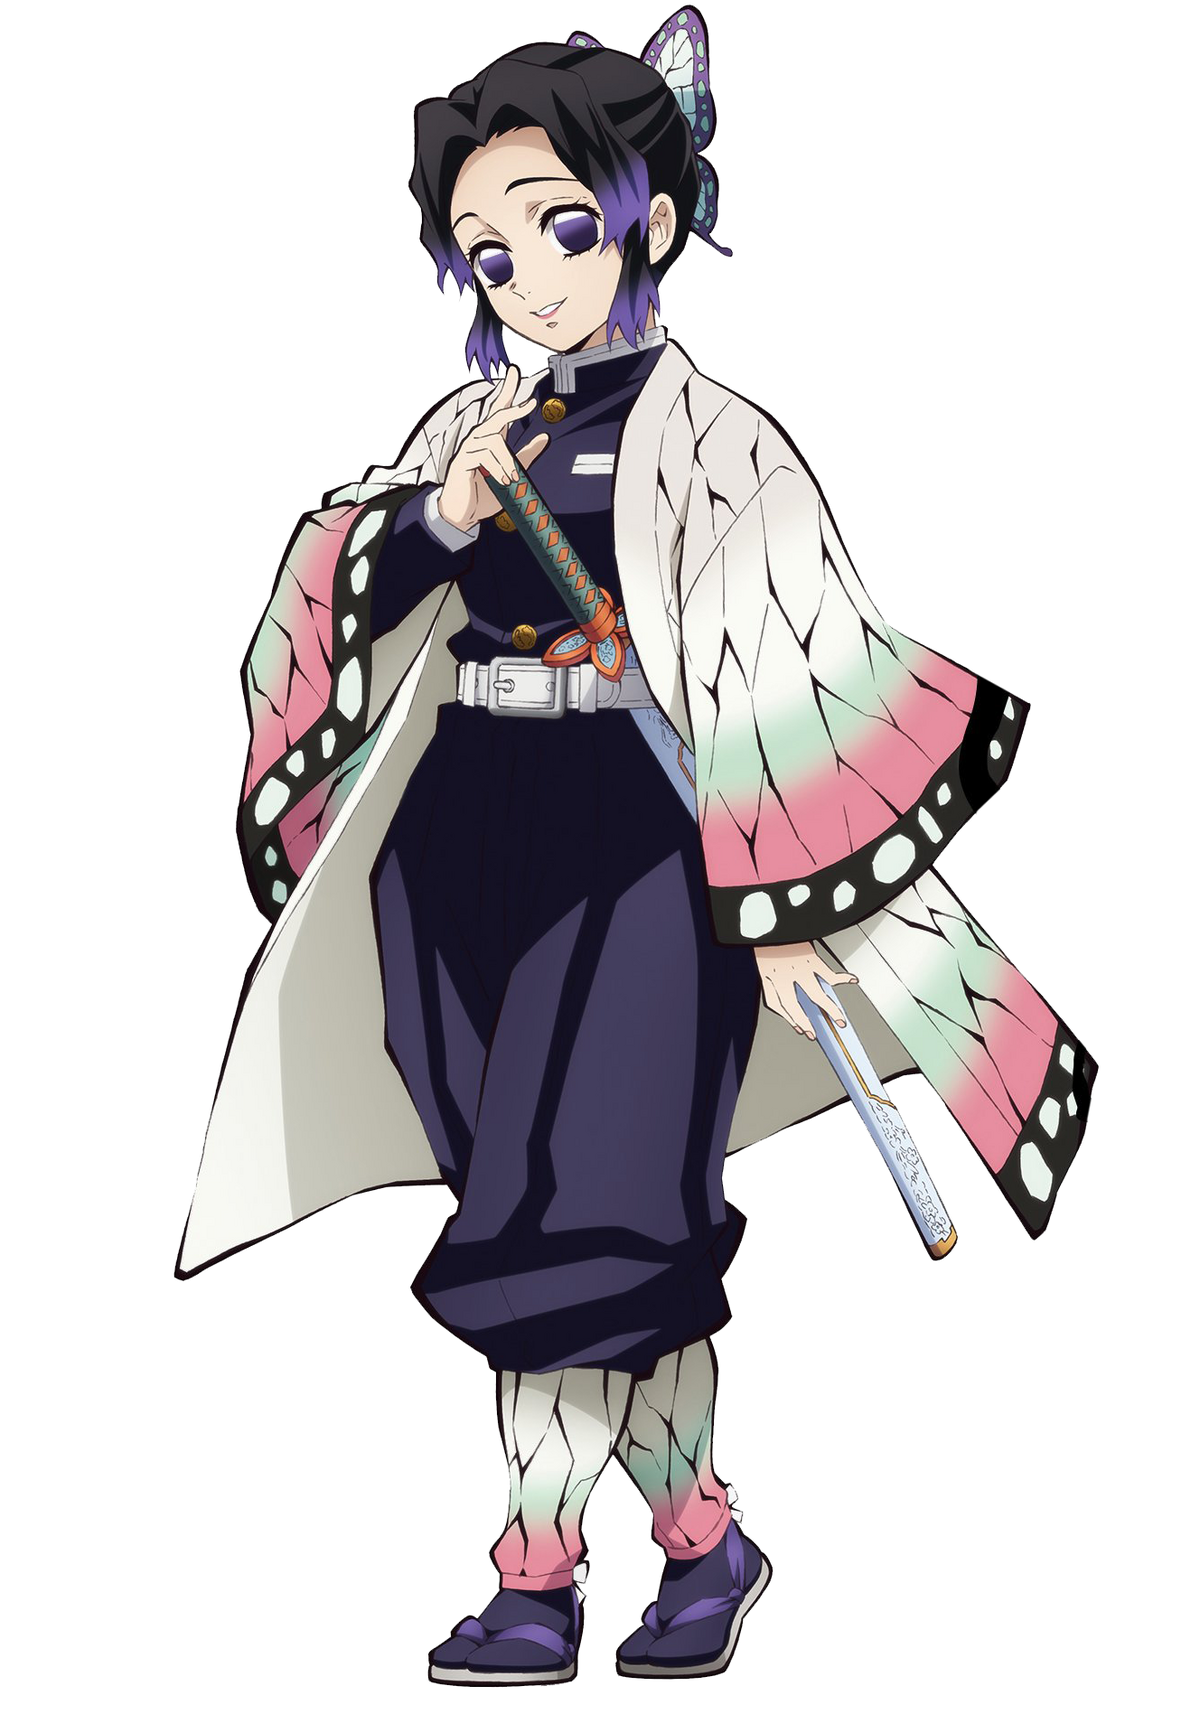 Kochou Shinobu - một nhân vật cực kỳ nổi tiếng của bộ truyện Kimetsu no Yaiba. Hãy để mình bị cuốn hút bởi sự quyến rũ và uyển chuyển của nhân vật này thông qua những hình ảnh đầy màu sắc và huyền bí liên quan đến từ khóa này.